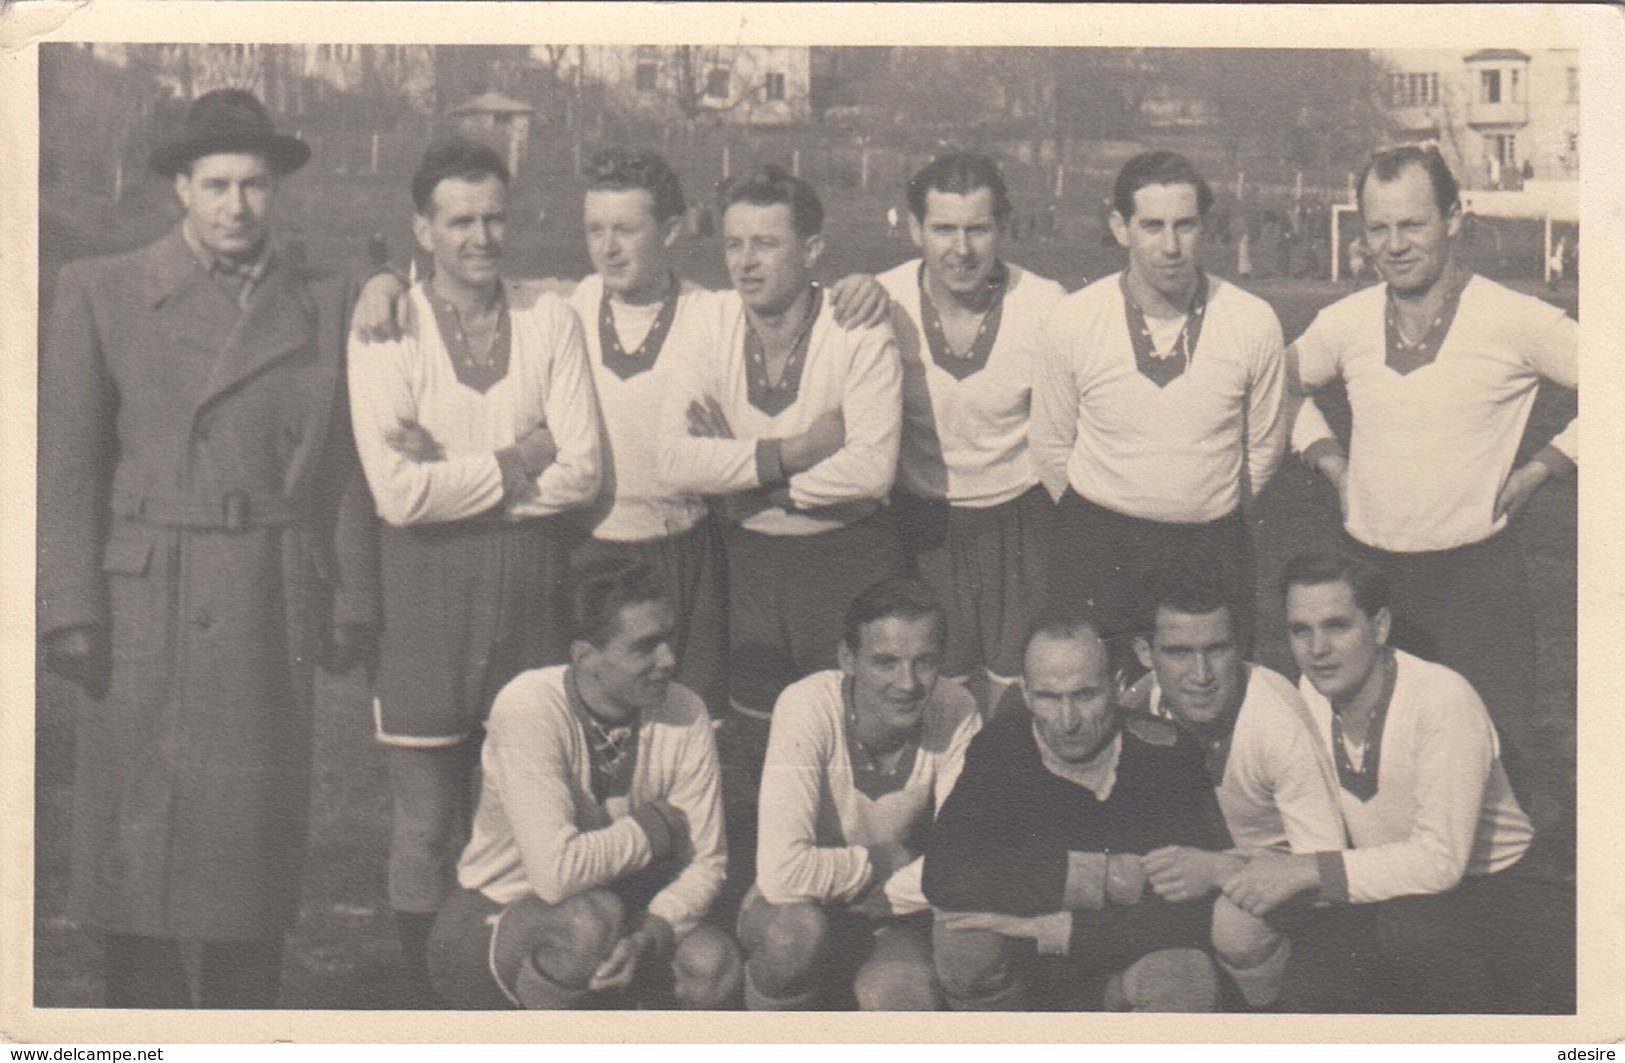 SPORTMANNSCHAFT Fussball? Fotokarte 1940? - Soccer